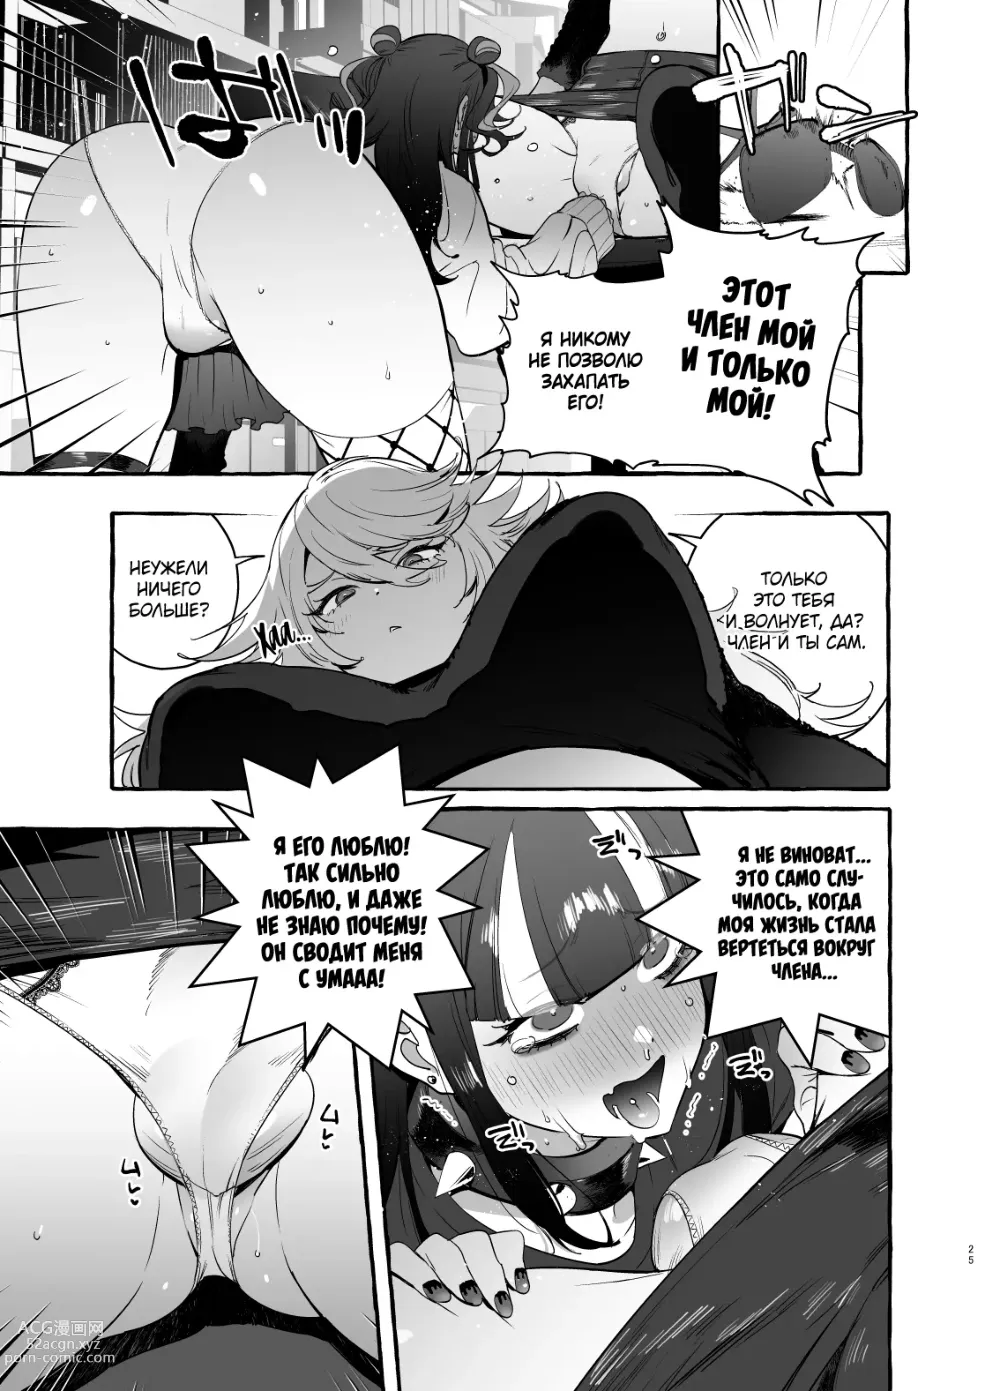 Page 27 of doujinshi Otaku Gyaru VS Toxic Boy (decensored)